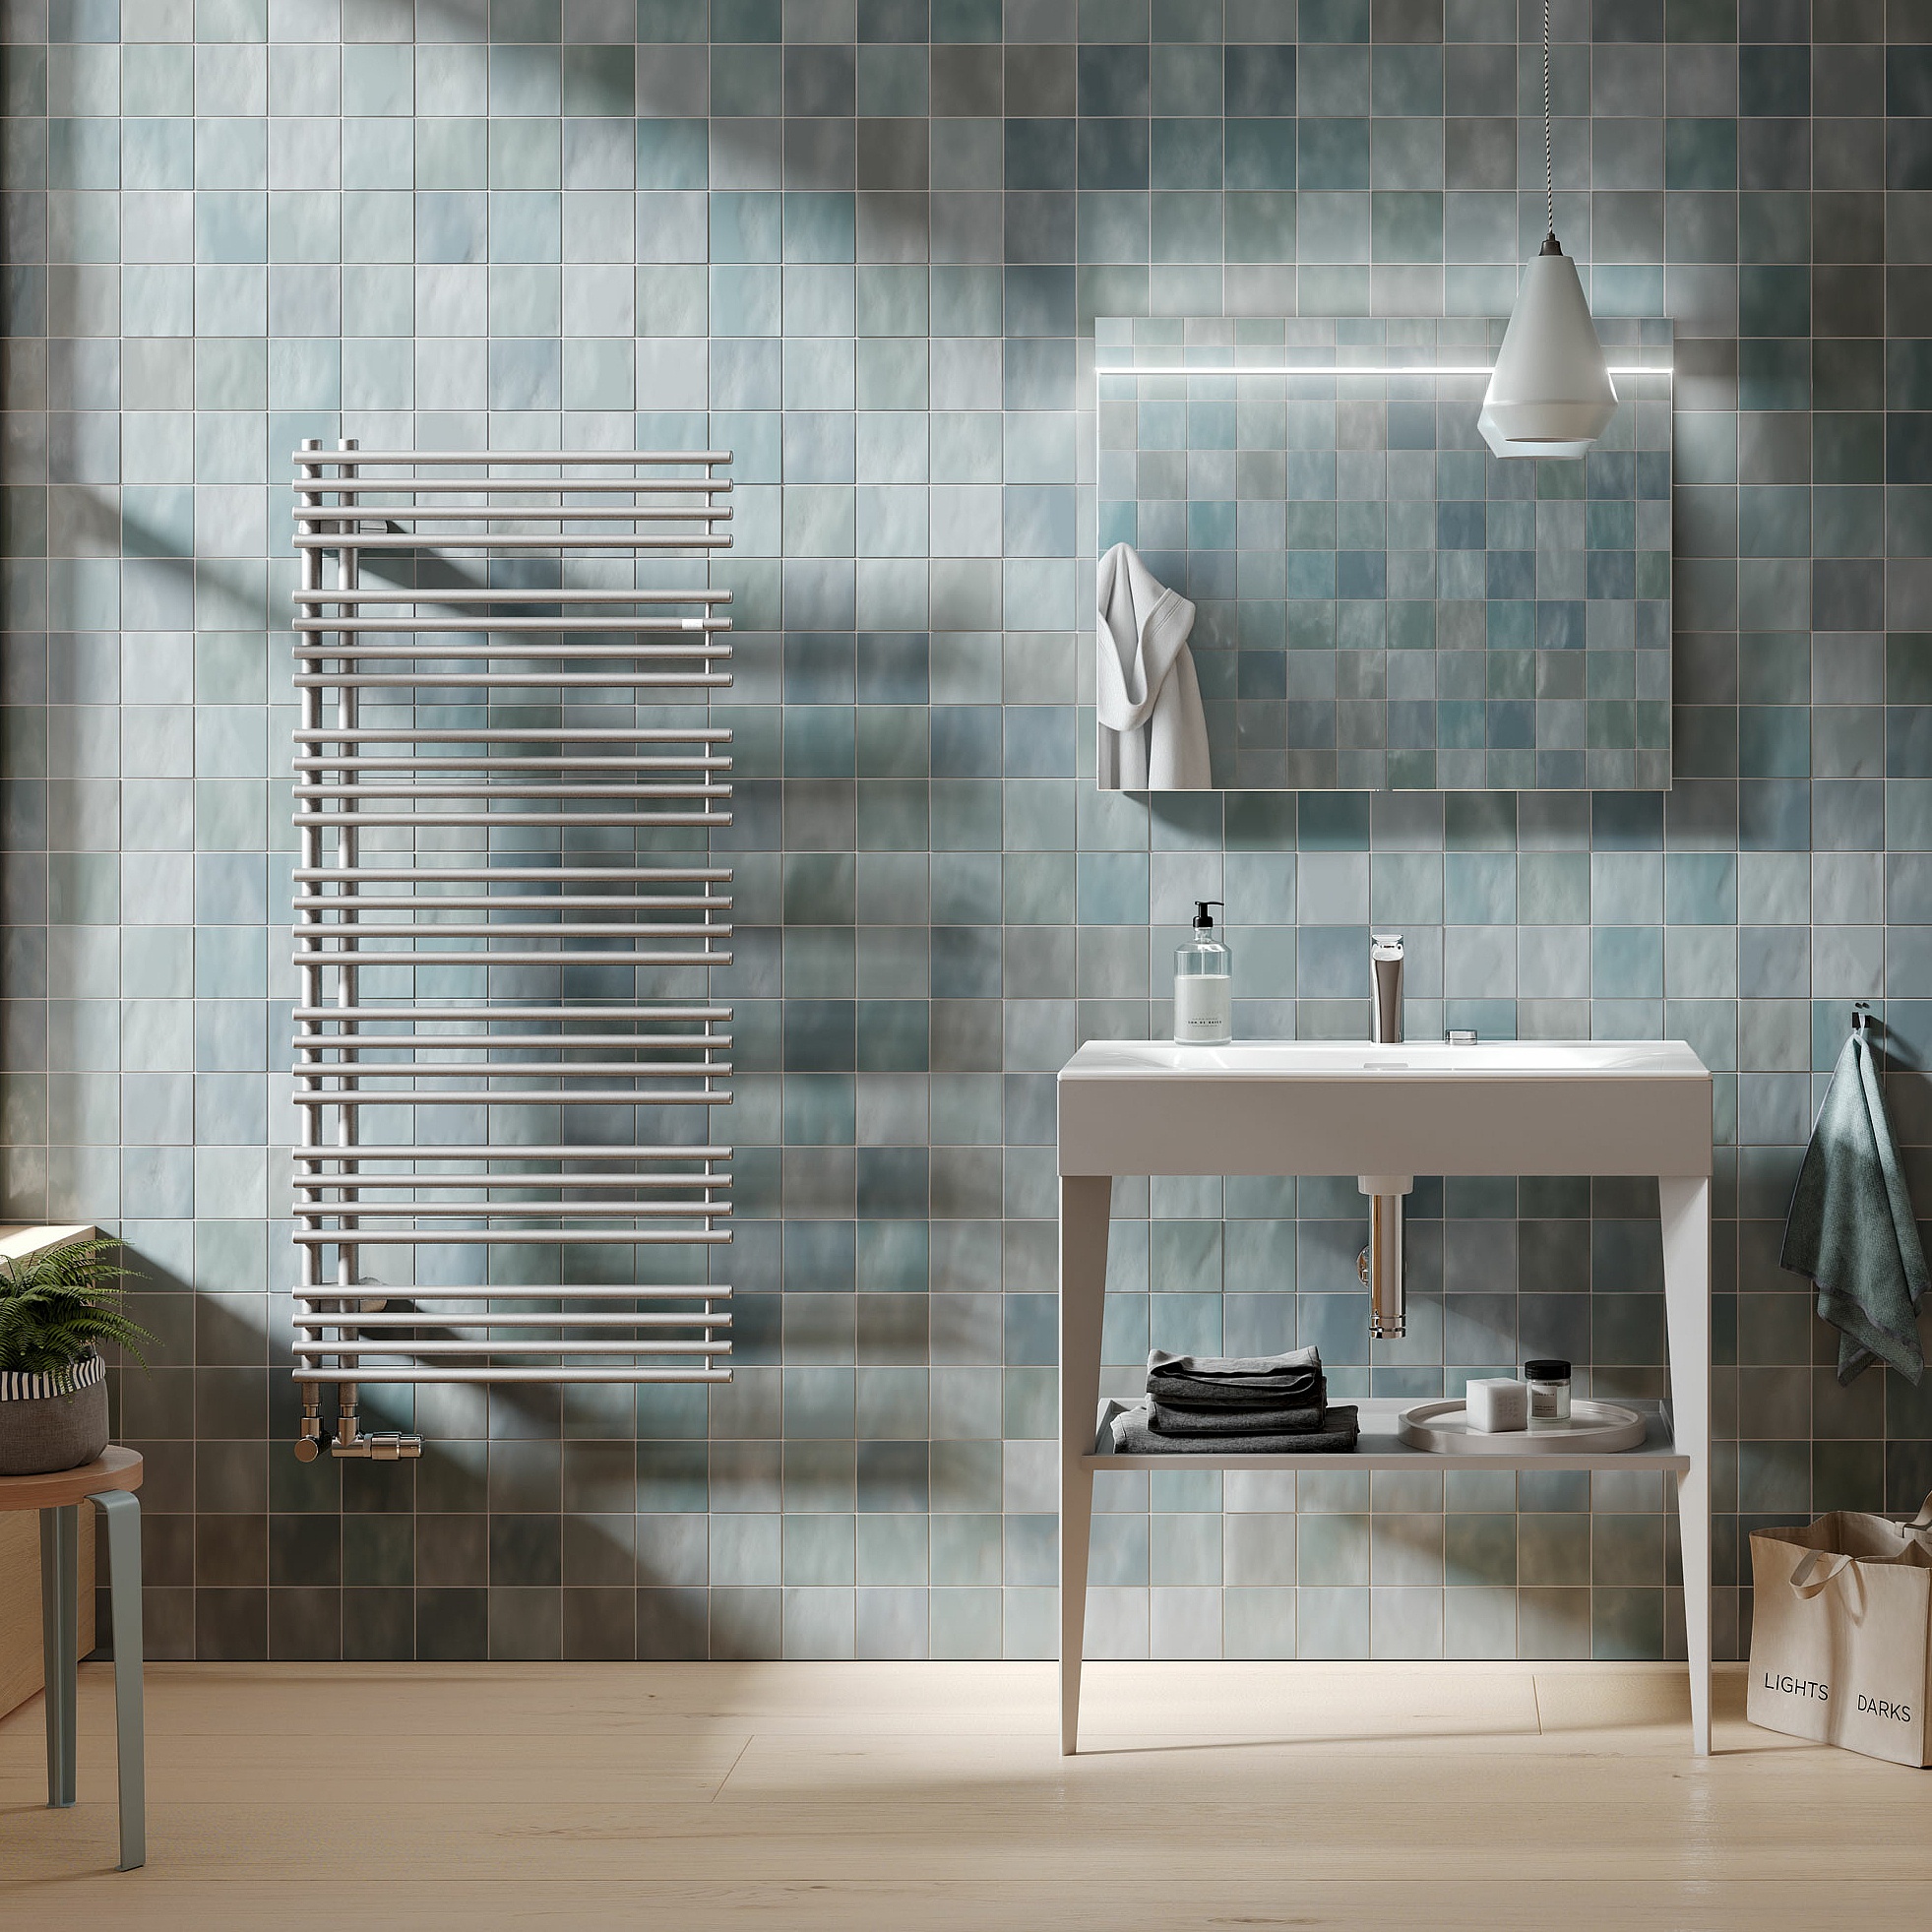 Radiatore da bagno e di design Kermi Diveo – la funzionalità incontra il comfort.